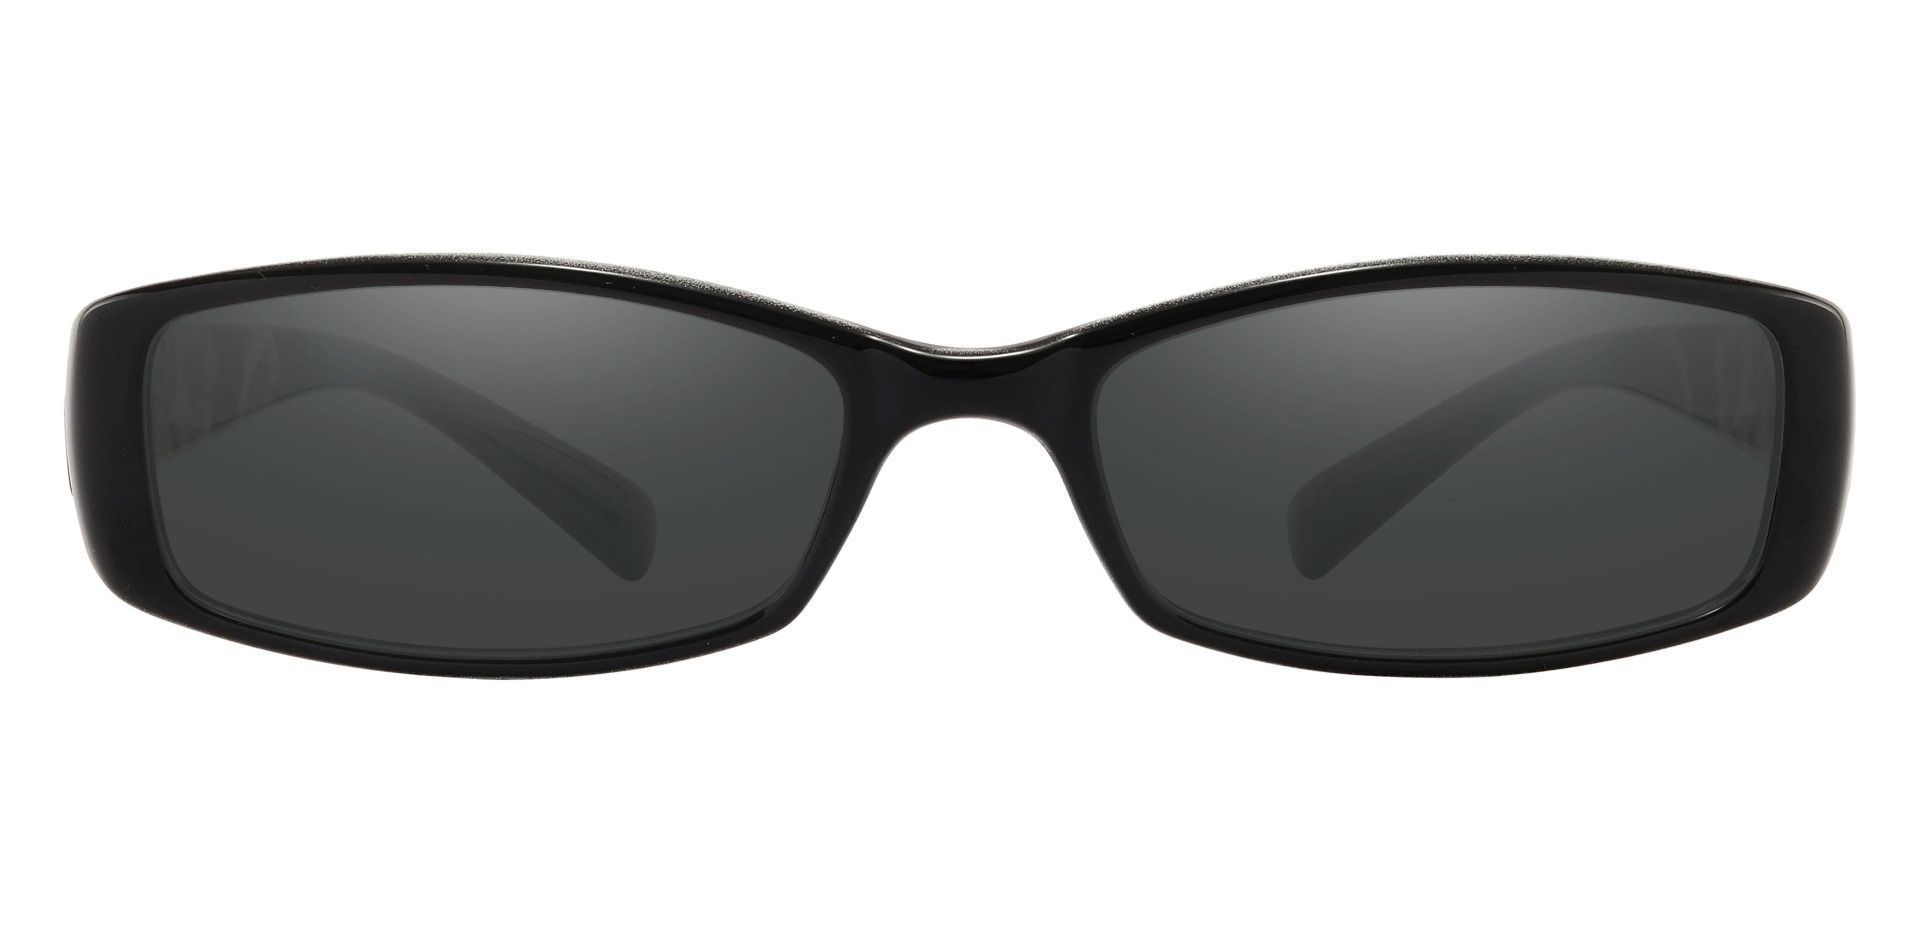 Medora Rectangle Reading Sunglasses - Black Frame With Gray Lenses